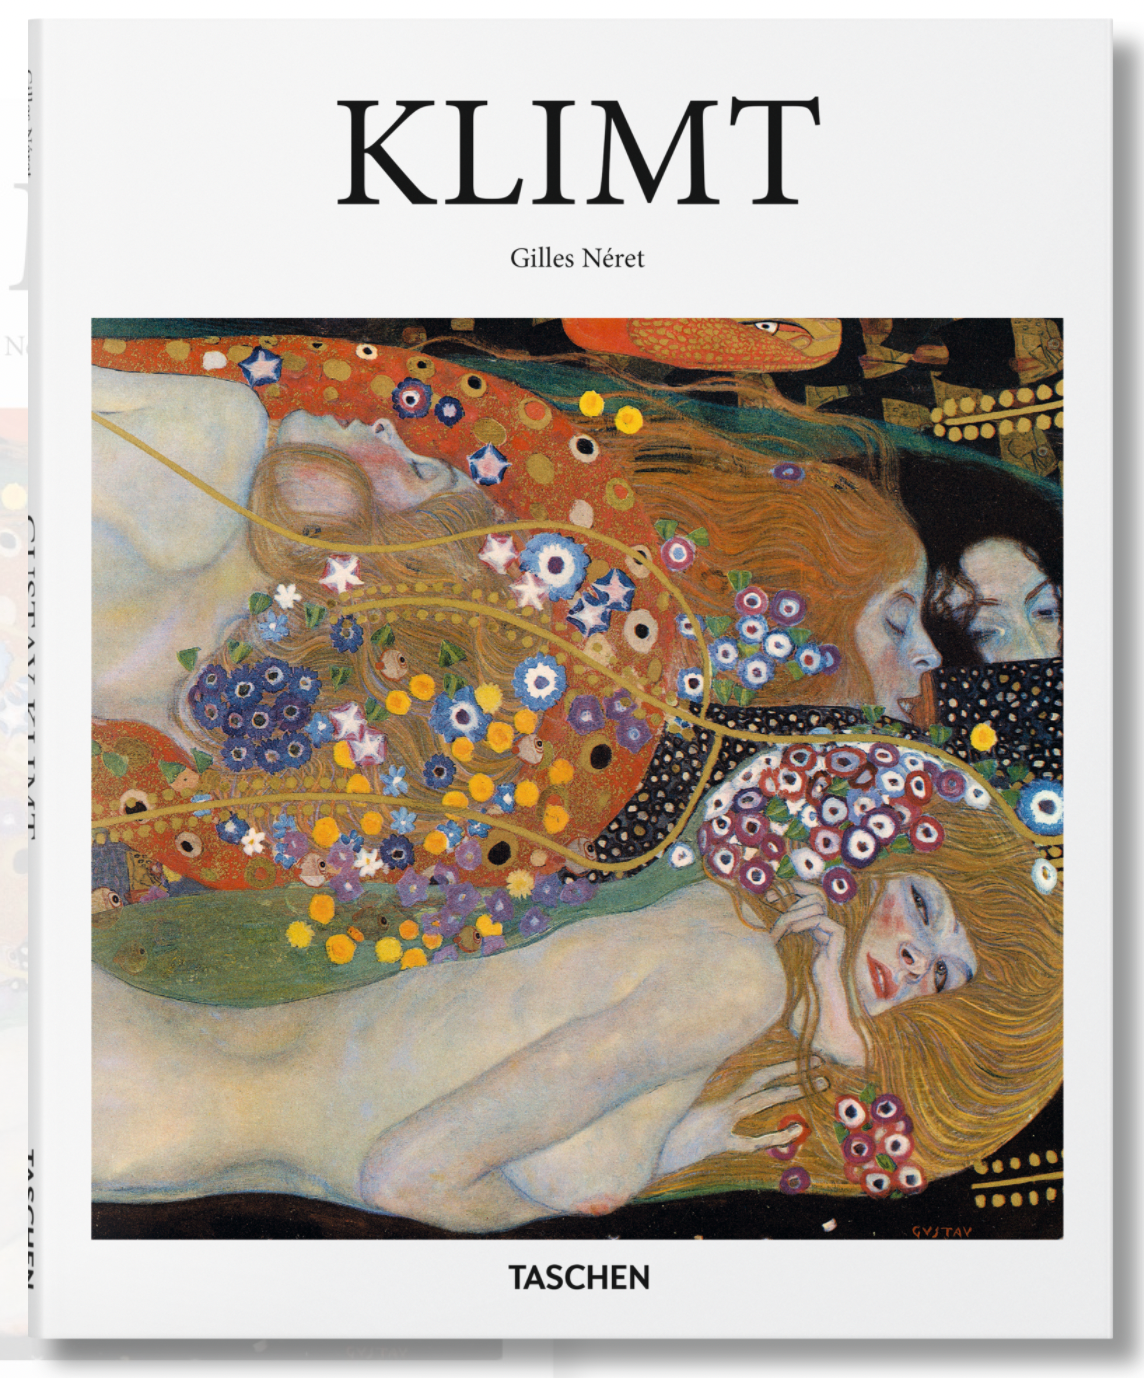 TASCHEN BOOKS - Klimt (Basic Art Series)